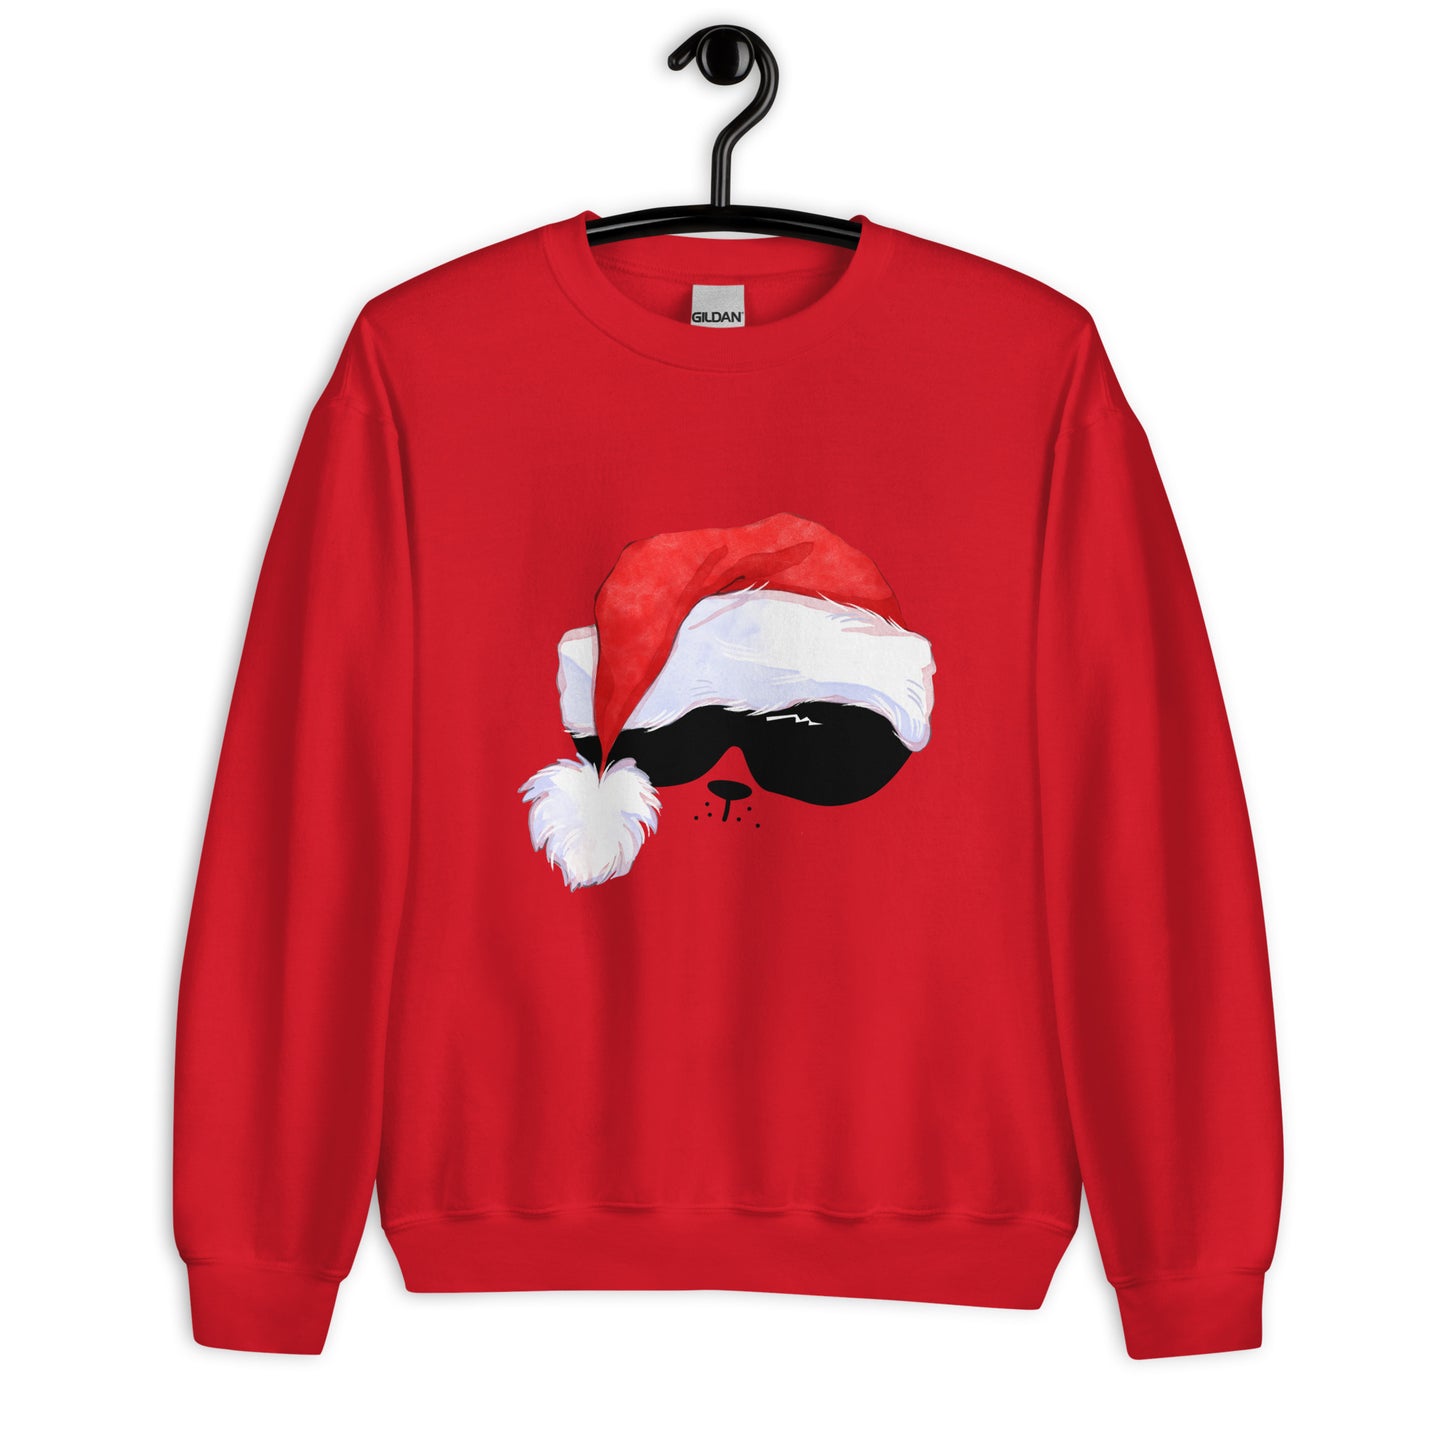 Unisex Sweatshirt "Christmas"